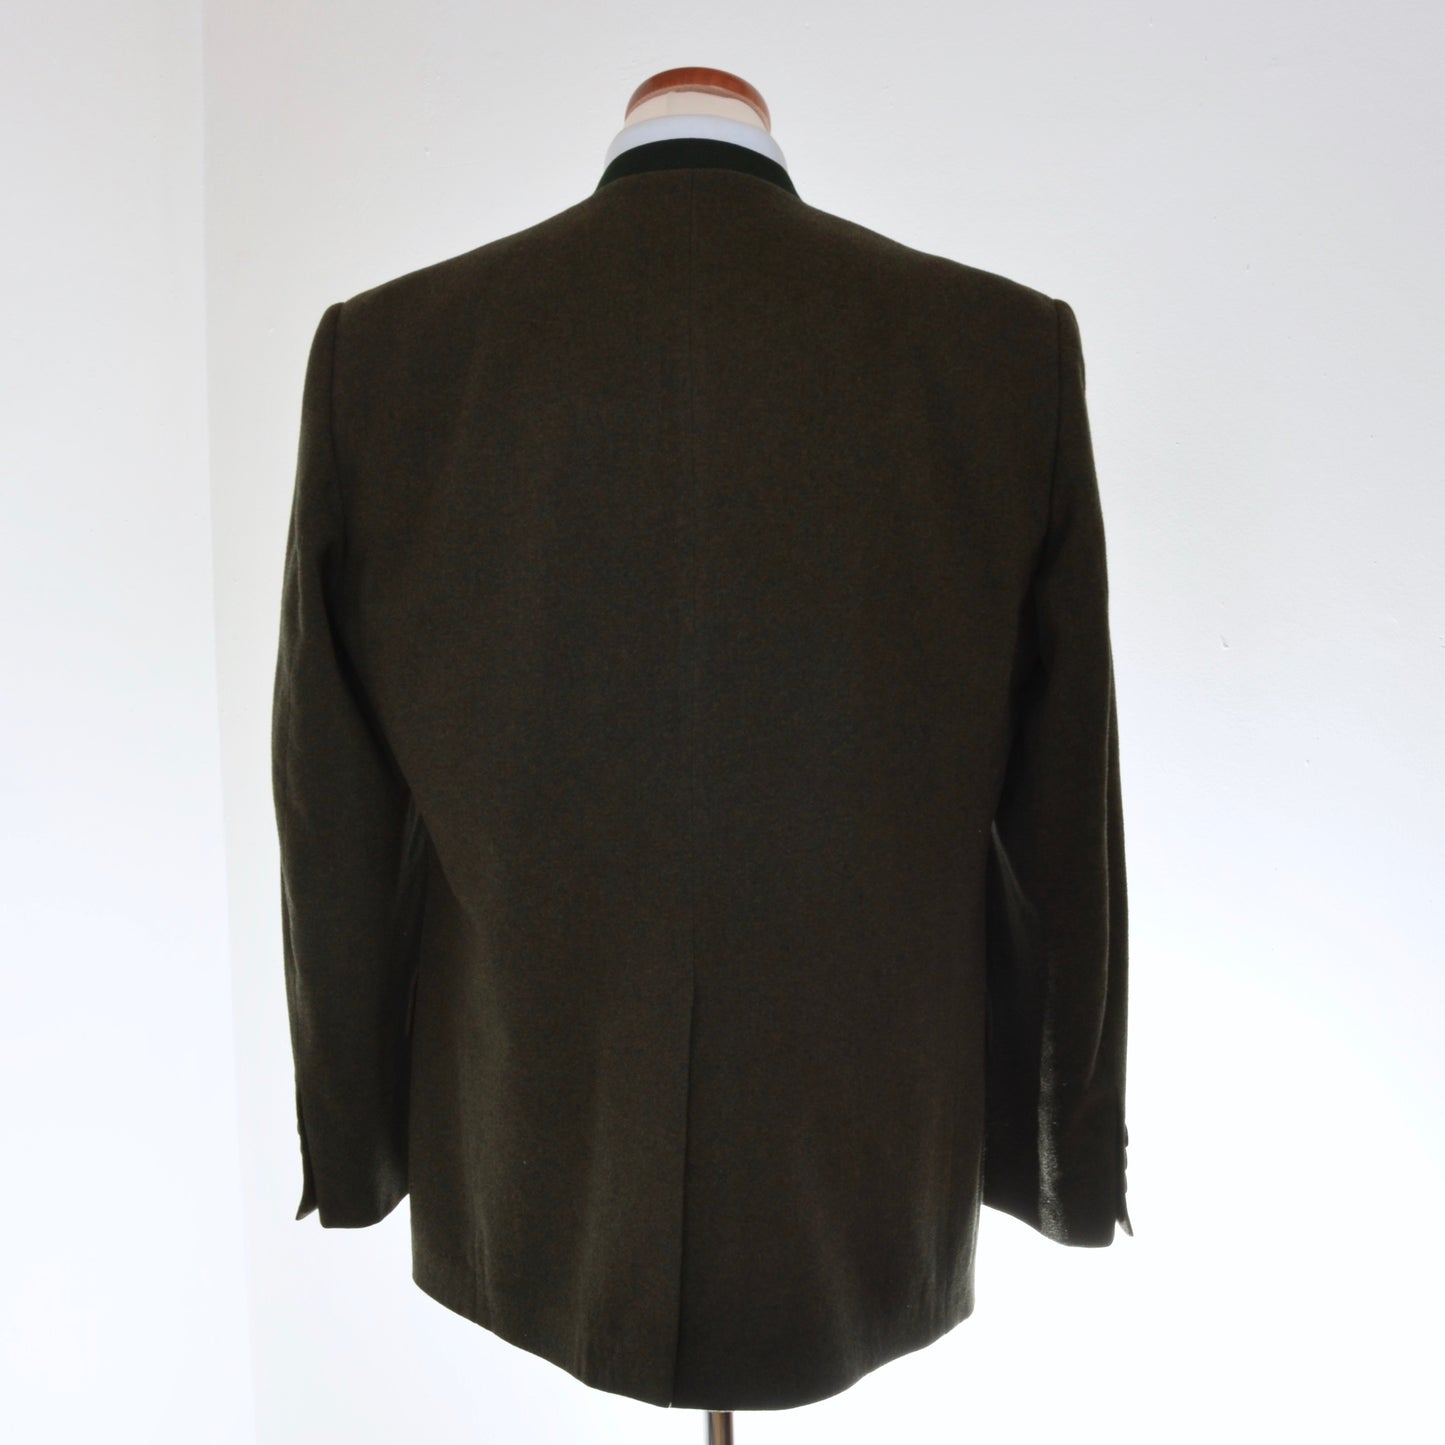 Habsburg Janker/Jacket Size 50 - Green